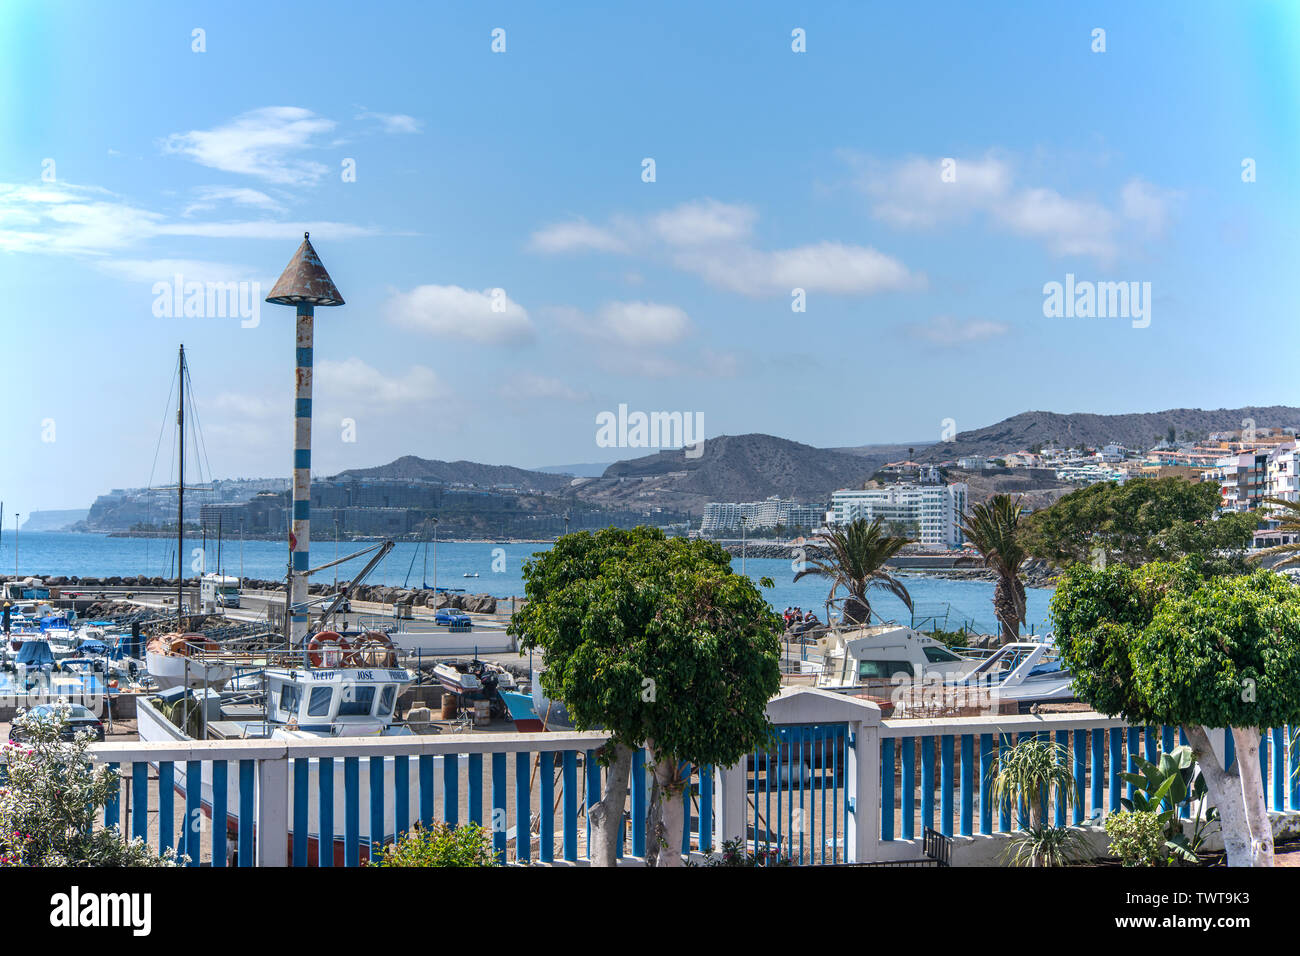 Blick auf den Jachthafen von Arguineguin Foto Stock